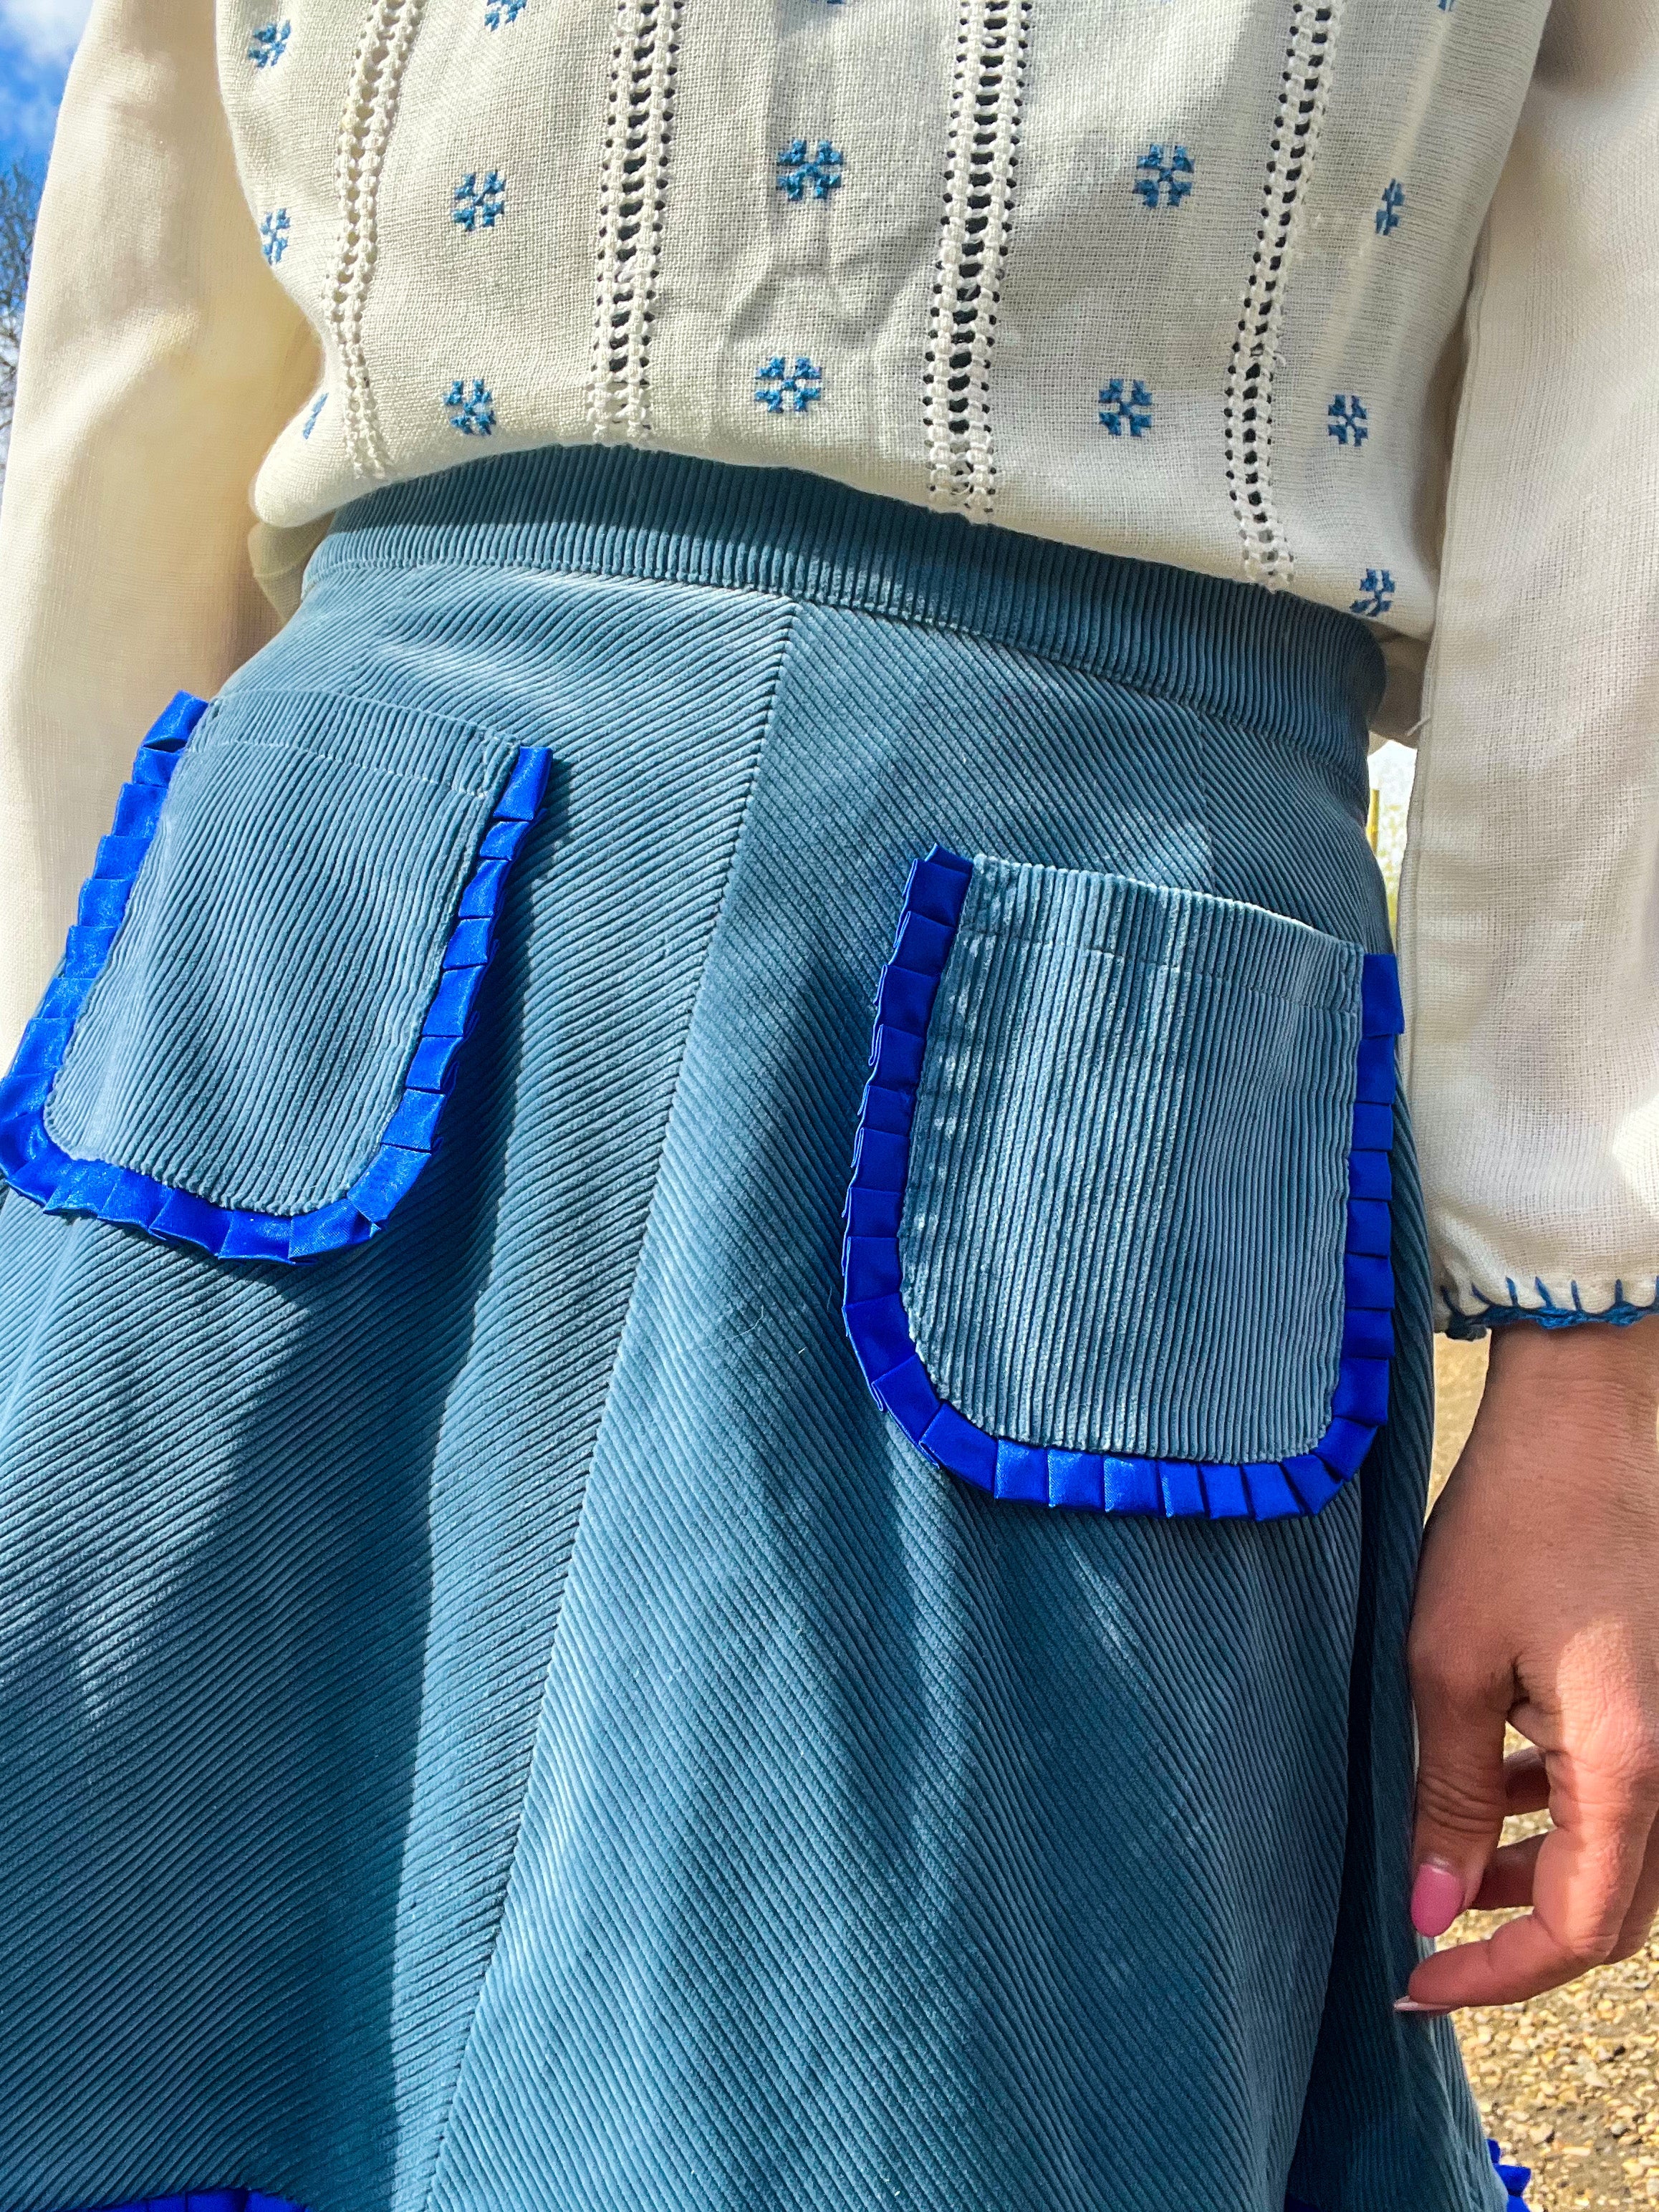 The ‘Bluebell’ Skirt